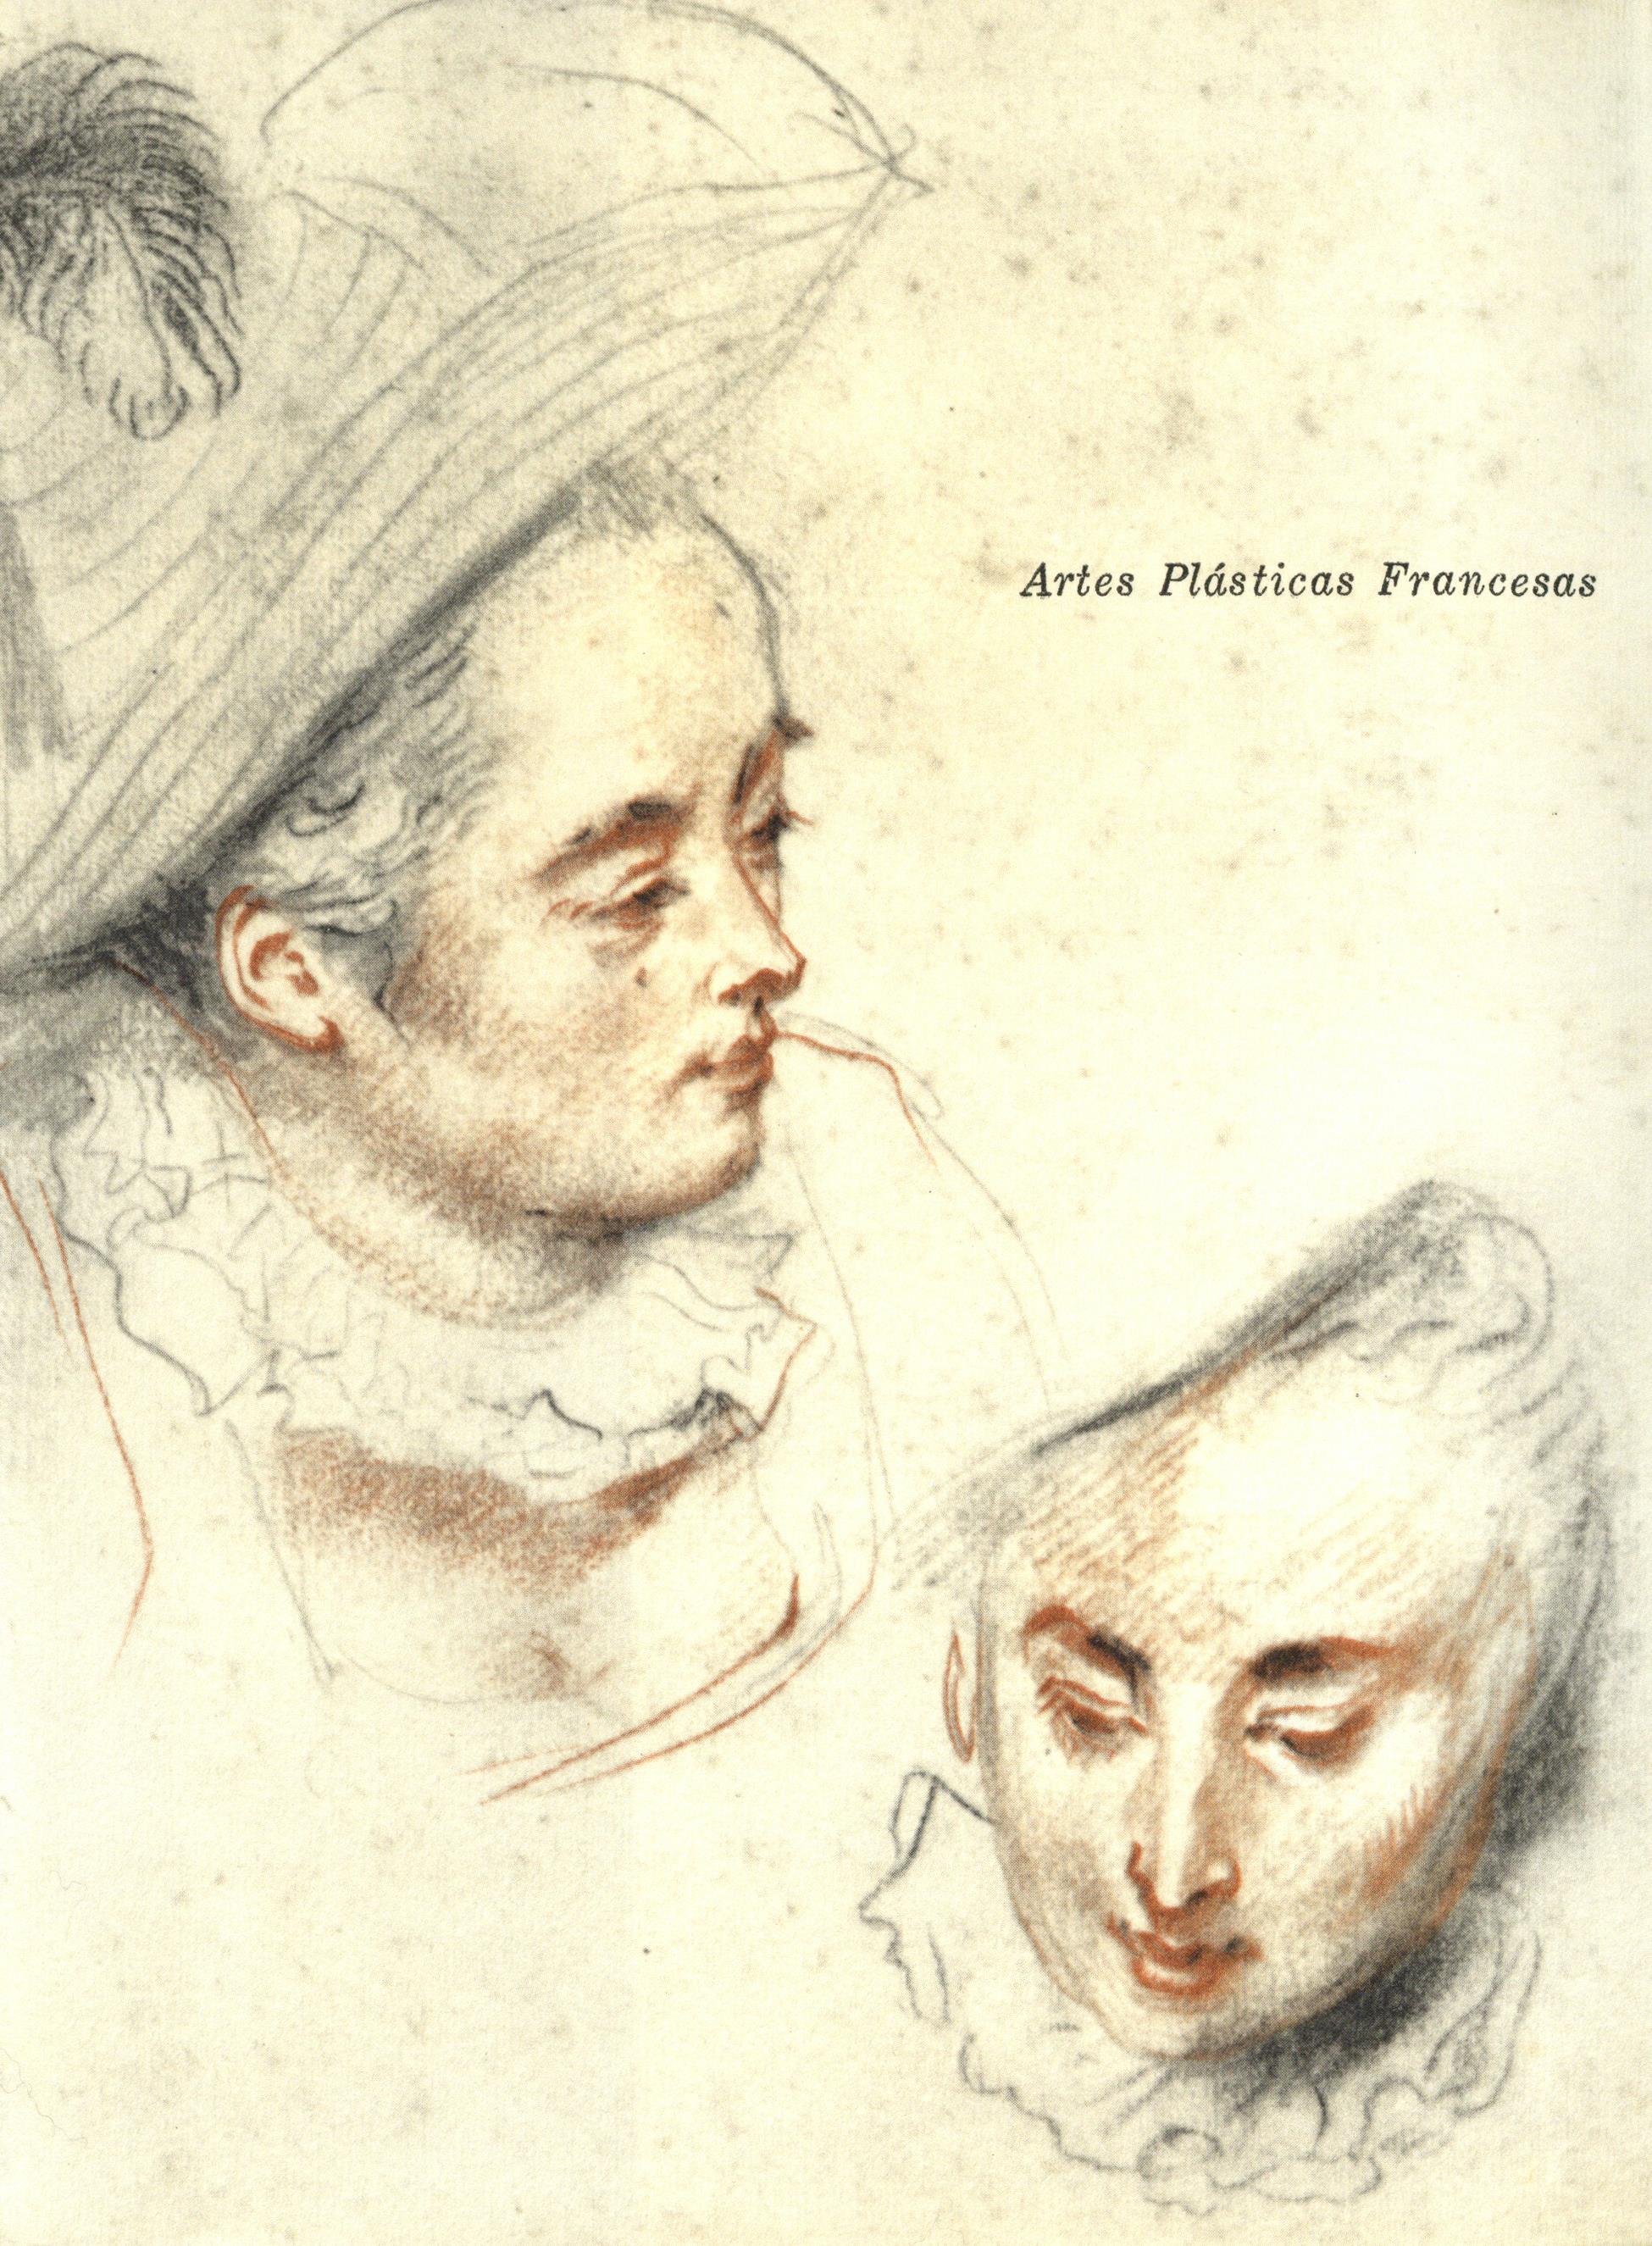 Colecção da Fundação Calouste Gulbenkian. Artes Plásticas Francesas de Watteau a Renoir